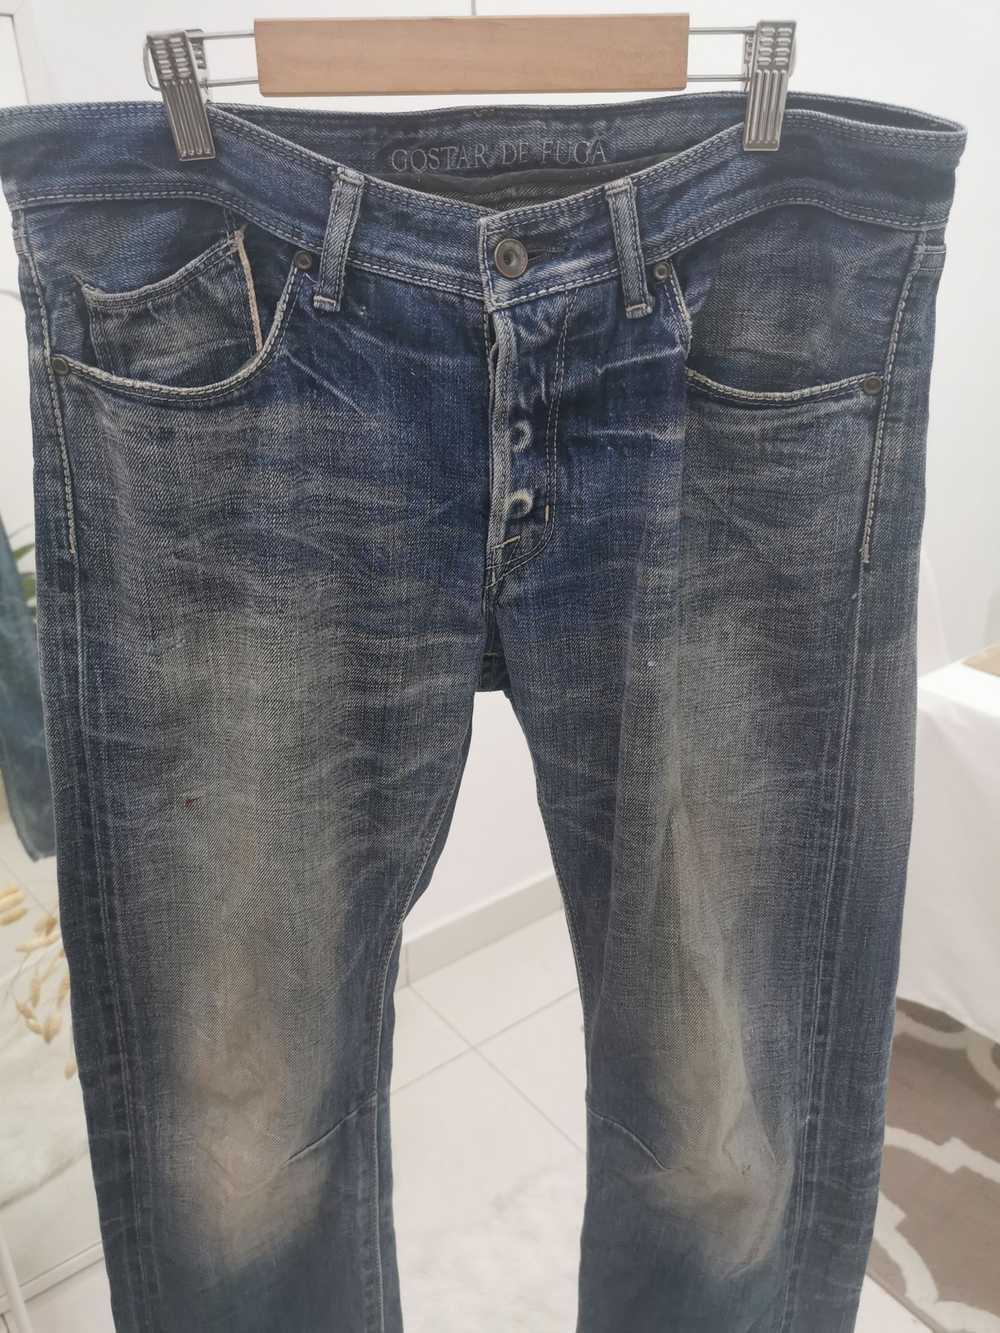 Gostar De Fuga Gostar De Fuga Selvedge denim jeans - image 3